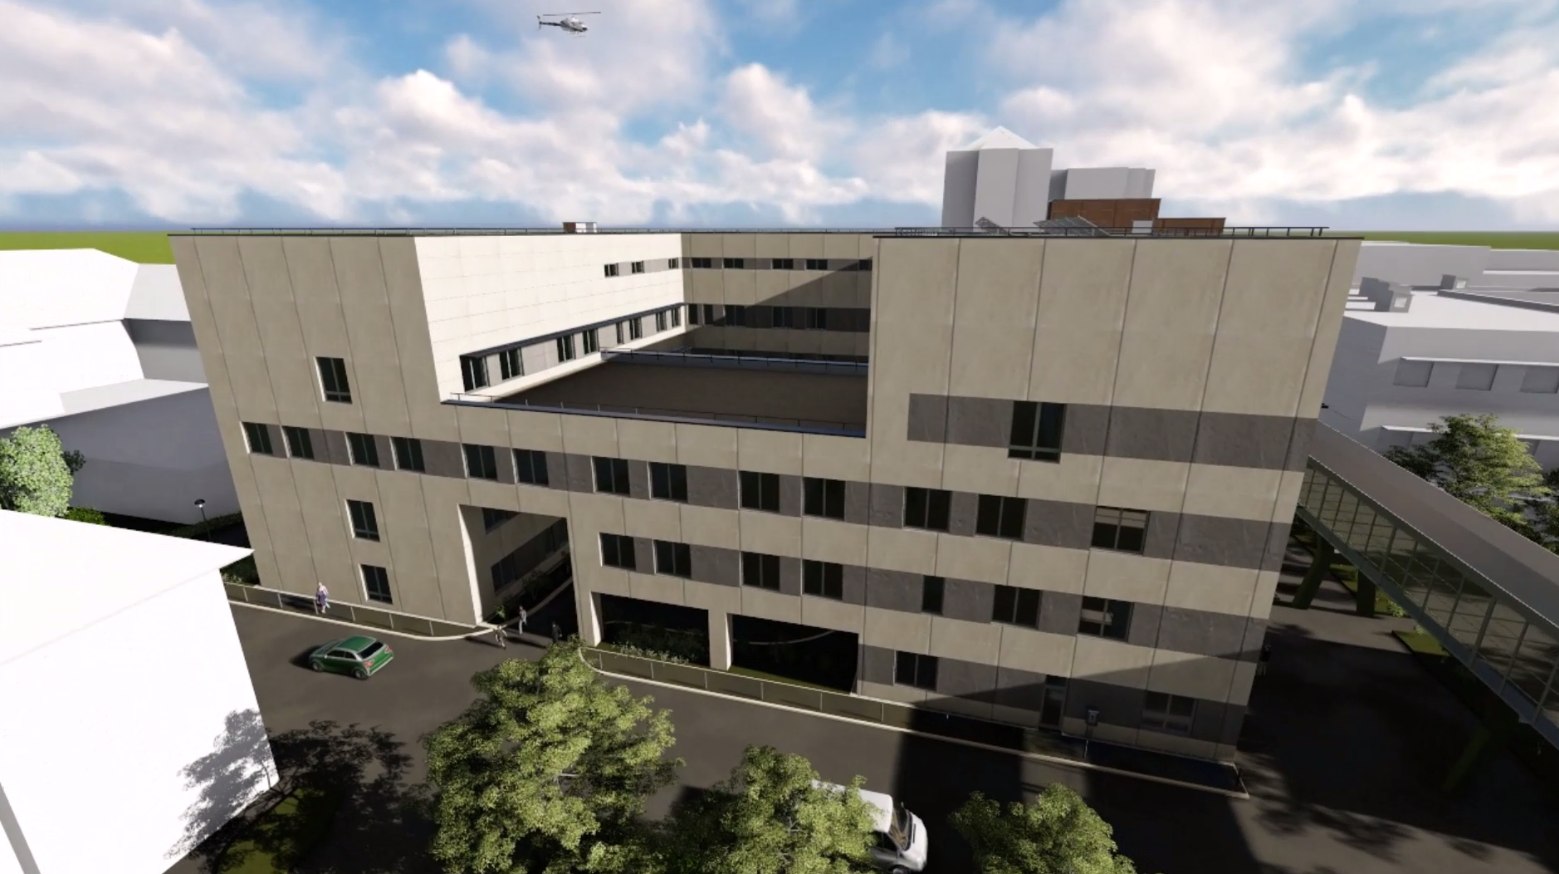 Öt emeletes és 12 ezer négyzetméteres lesz a kórház új épülete